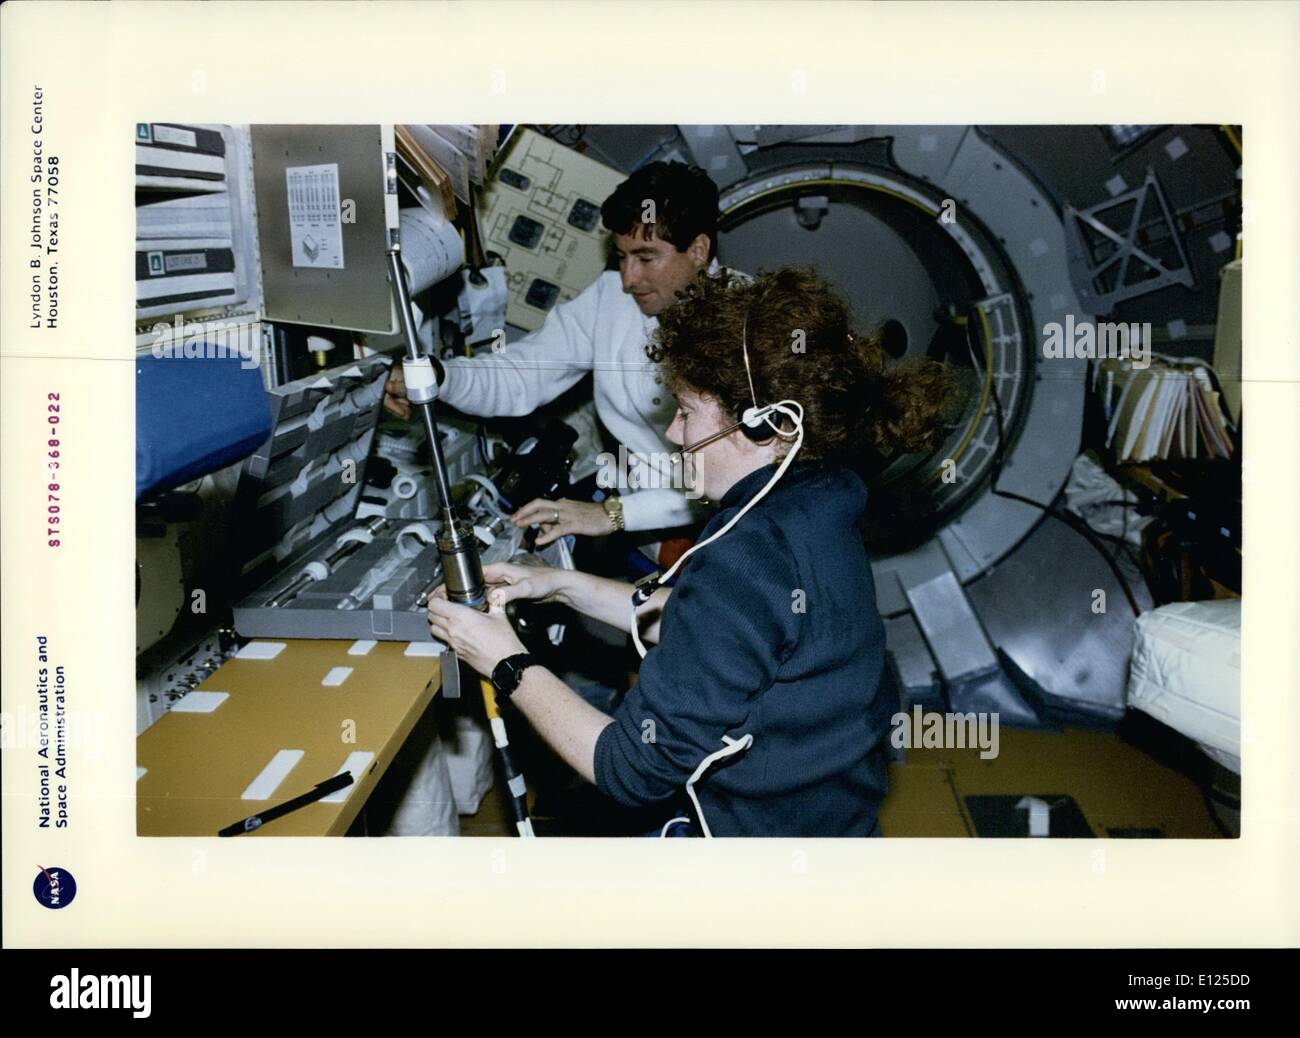 Giugno 06, 1996 - Johnson Space Center a Houston, Texas STS-78 a bordo vista: astronauta SUSAN J. Helms, payload commander, e Terence T. (Tom) Henrick, comandante della missione, preparare un campione di una cartuccia contenente i cristalli semiconduttori per Spacelan research.i cristalli sono stati successivamente collocati nel gradiente avanzato forno di riscaldamento (AGHF) nella vita e la microgravità Spacelab (LMS-1) Scienza modulo. Il AGHF è progettato per la solidificazione direzionale dei cristalli nel campione delle cartucce Foto Stock